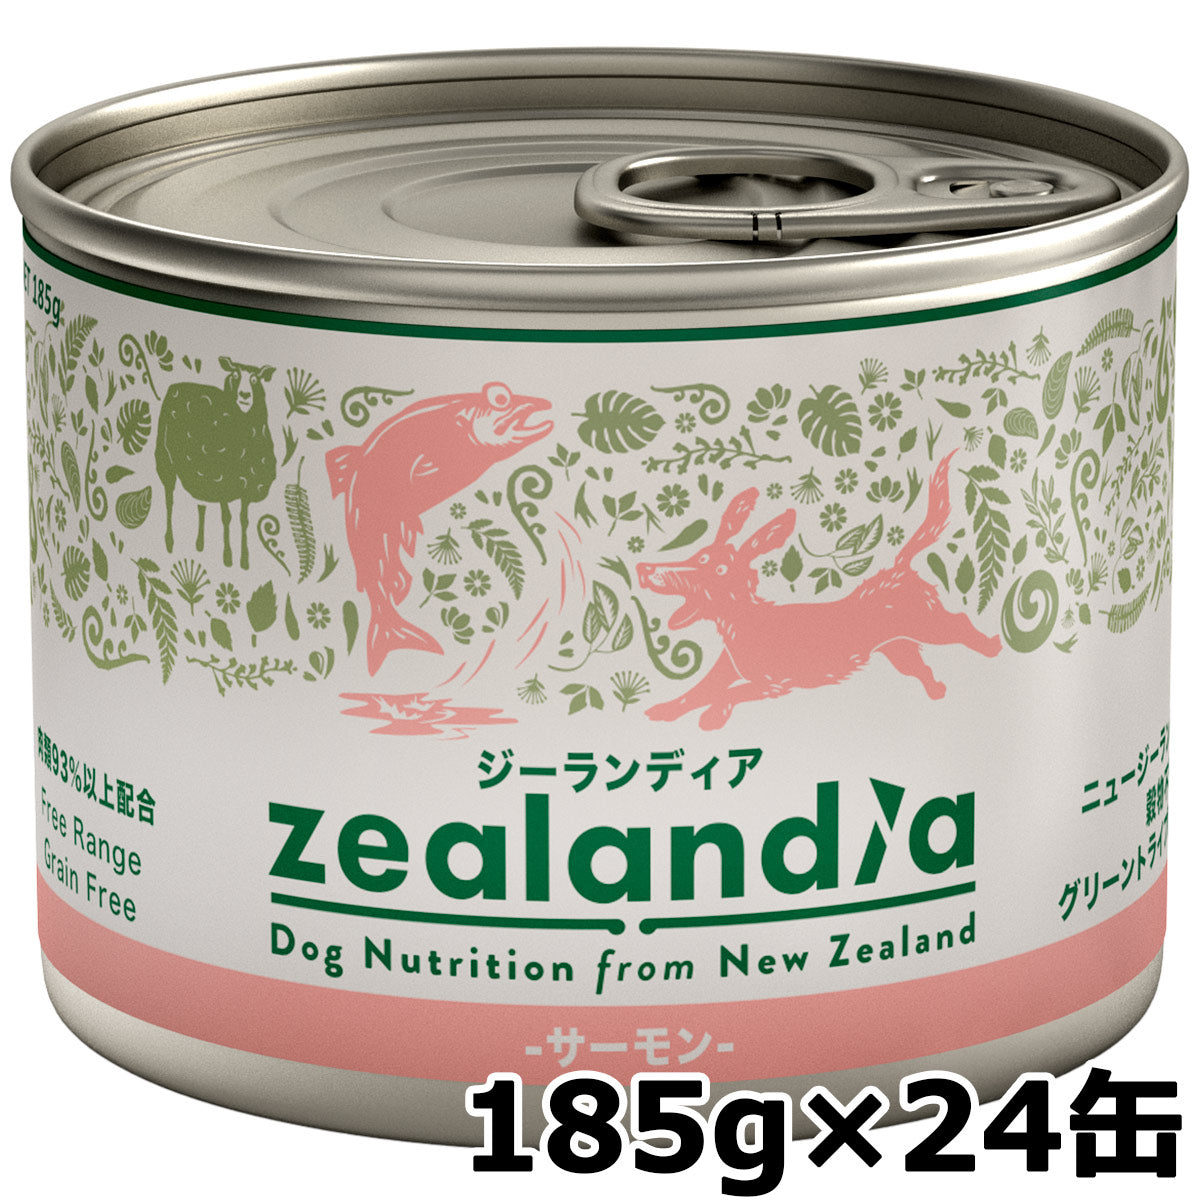 ジーランディア ドッグ サーモン 185g×24缶 犬 ウェットフード 総合栄養食 無添加 グレインフリー グリーントライプ